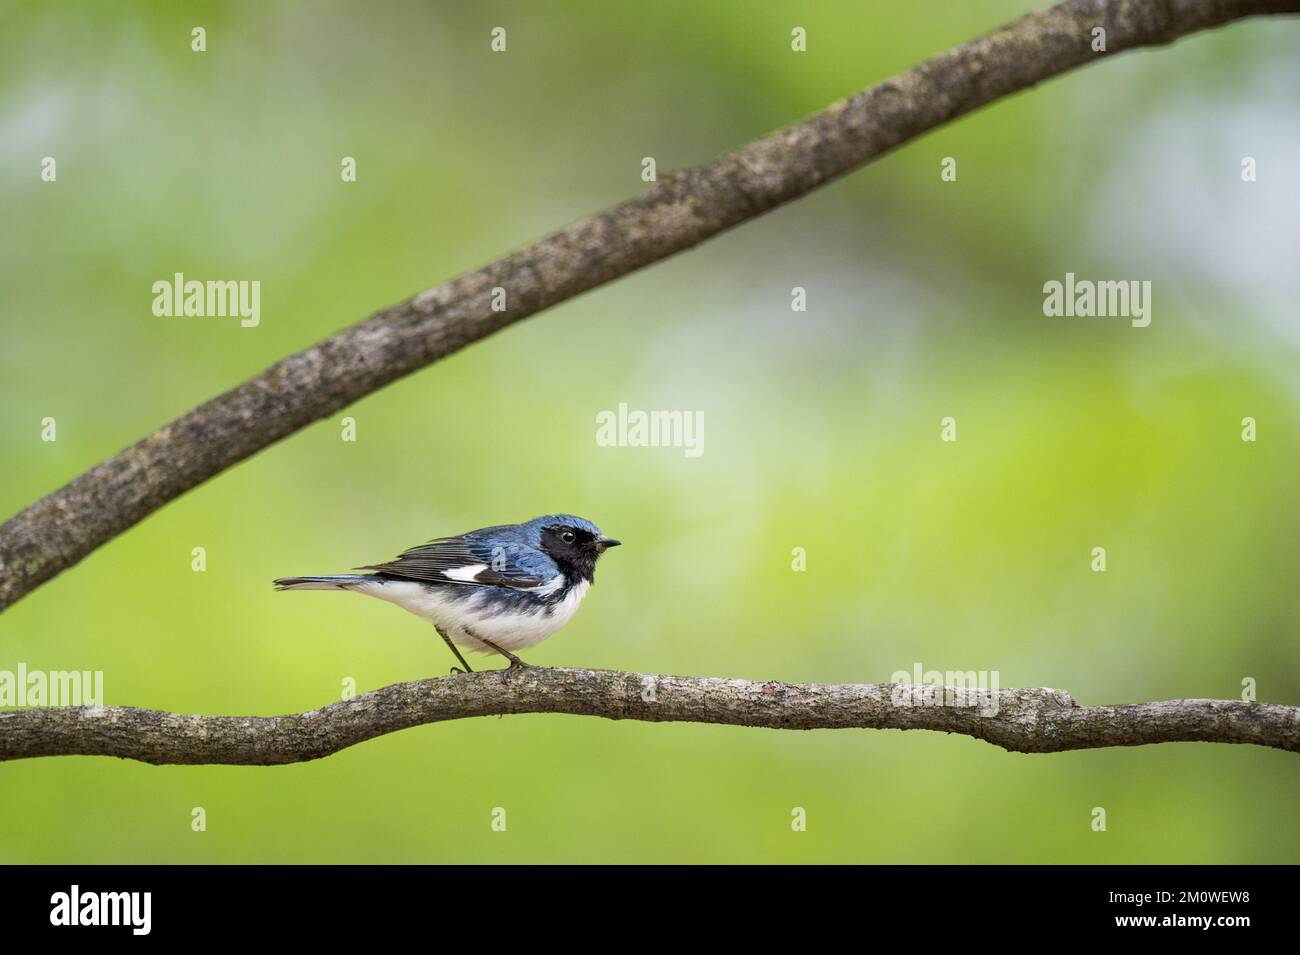 A closeup shot of a Black-throated Blue Warbler bird Stock Photo